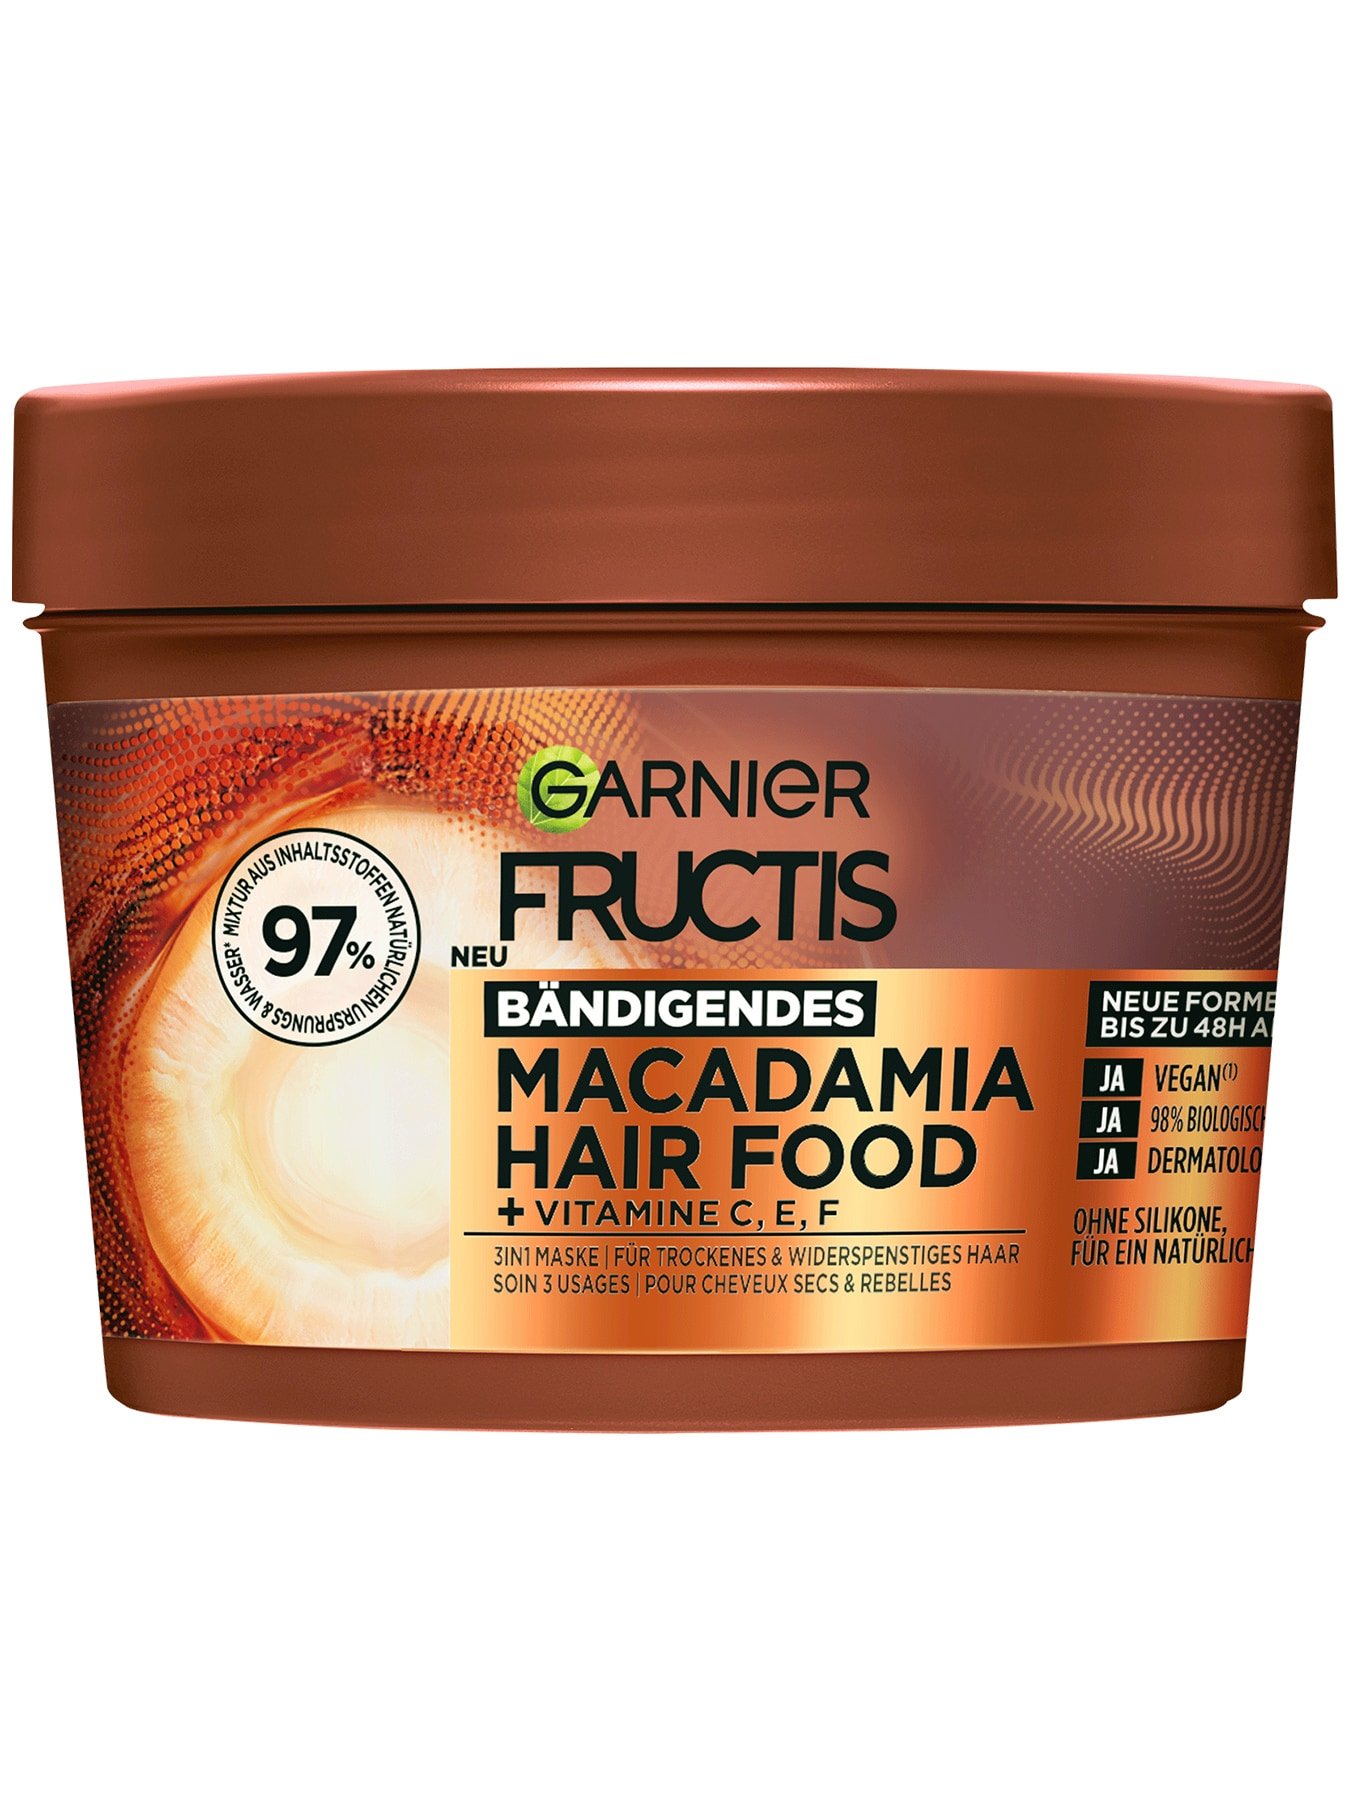 Fructis 3in1 Maske fuer trockenes Haar angereichert mit Macadamia - Produktabbildung